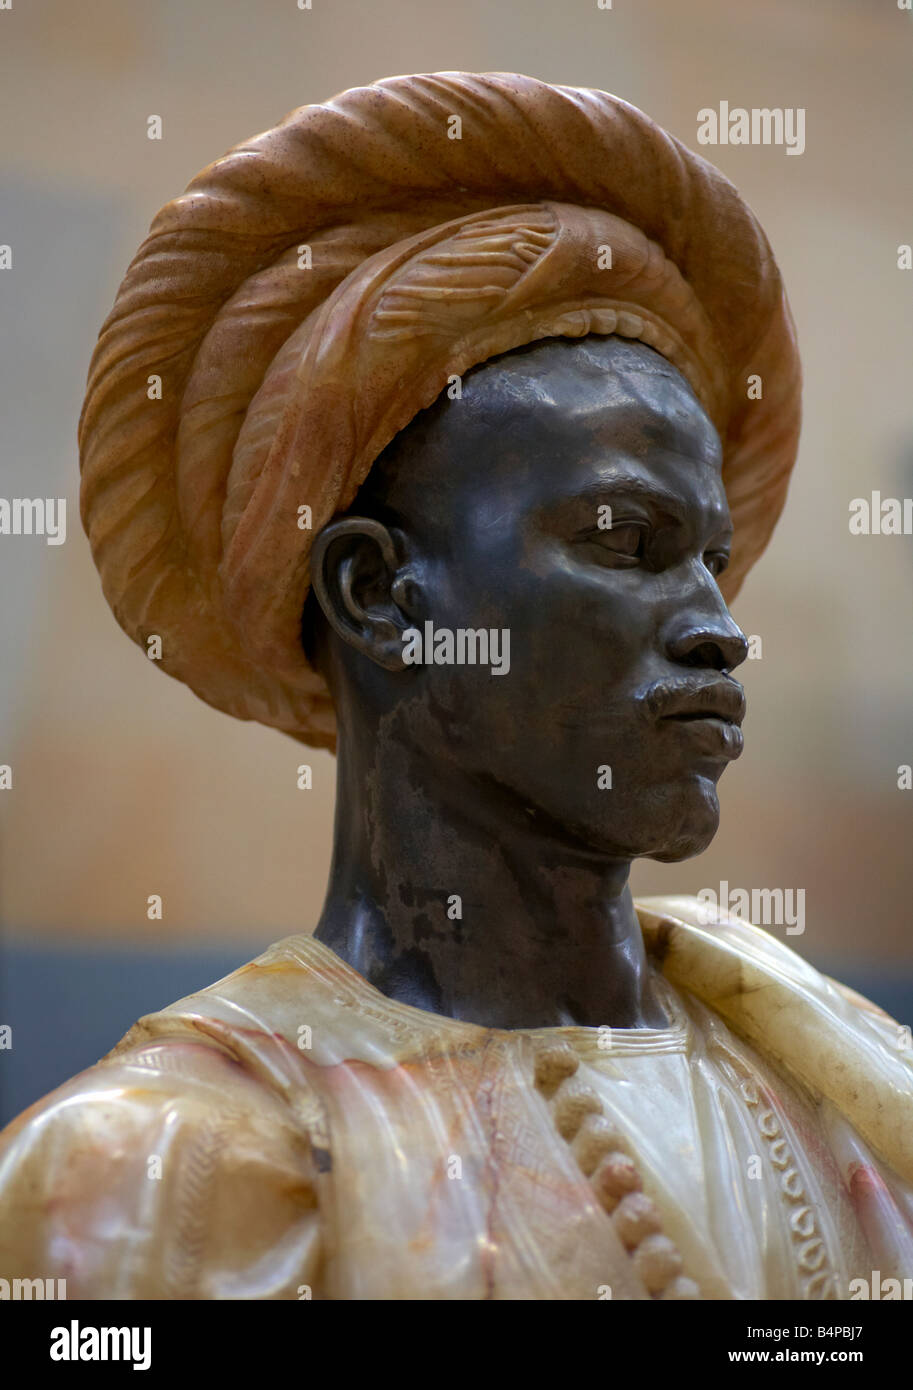 Nègre du Soudan sculpture by Charles Cordier Musee d Orsay Paris France Stock Photo